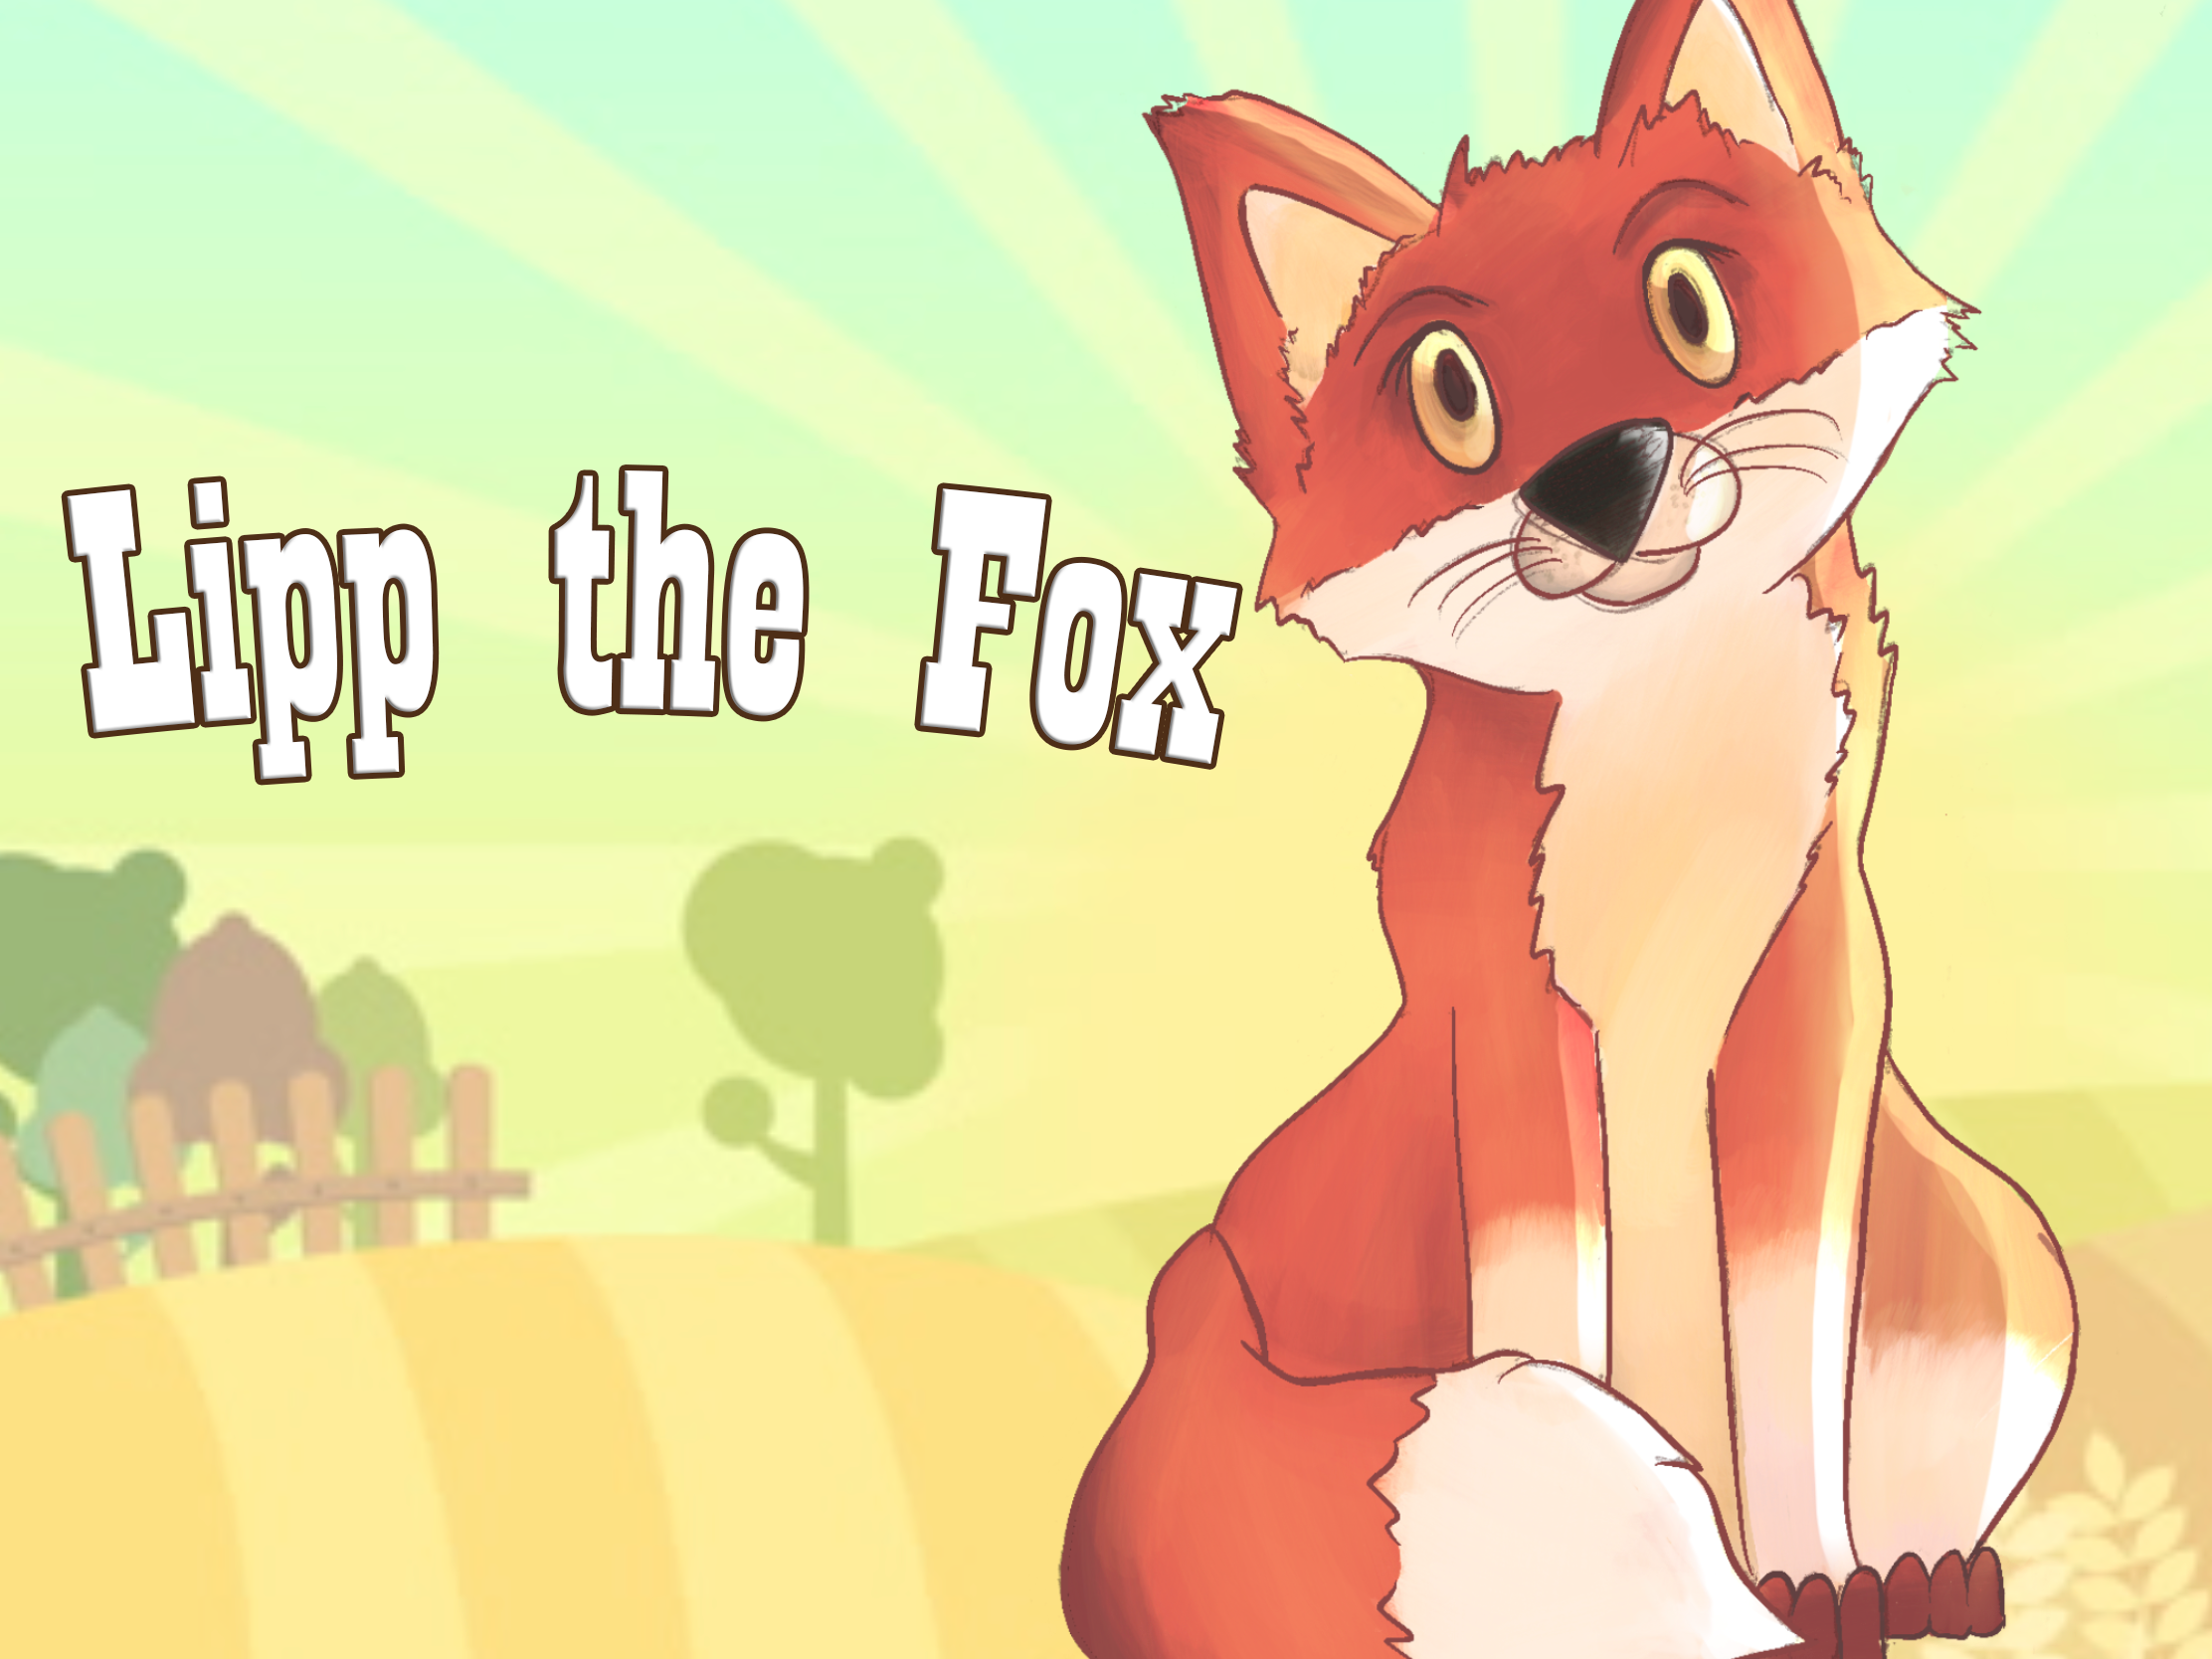 Lipp the Fox Startscreen